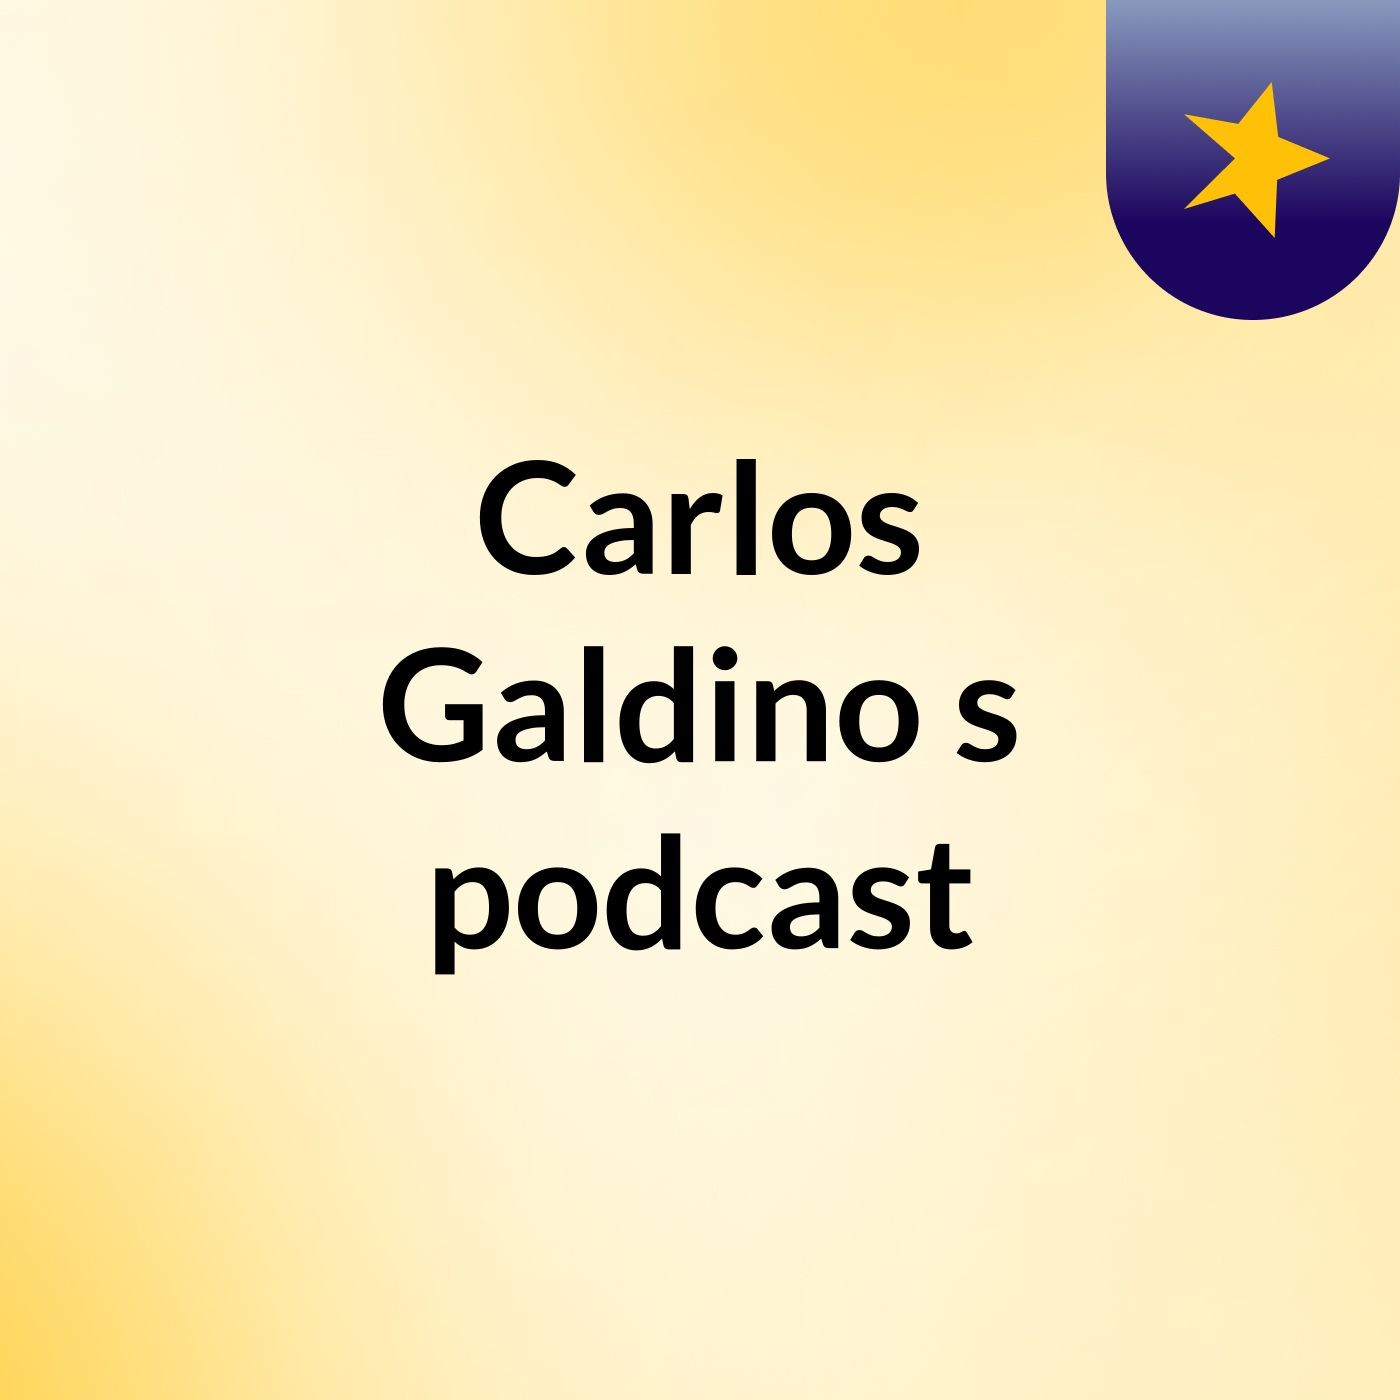 Carlos Galdino's podcast